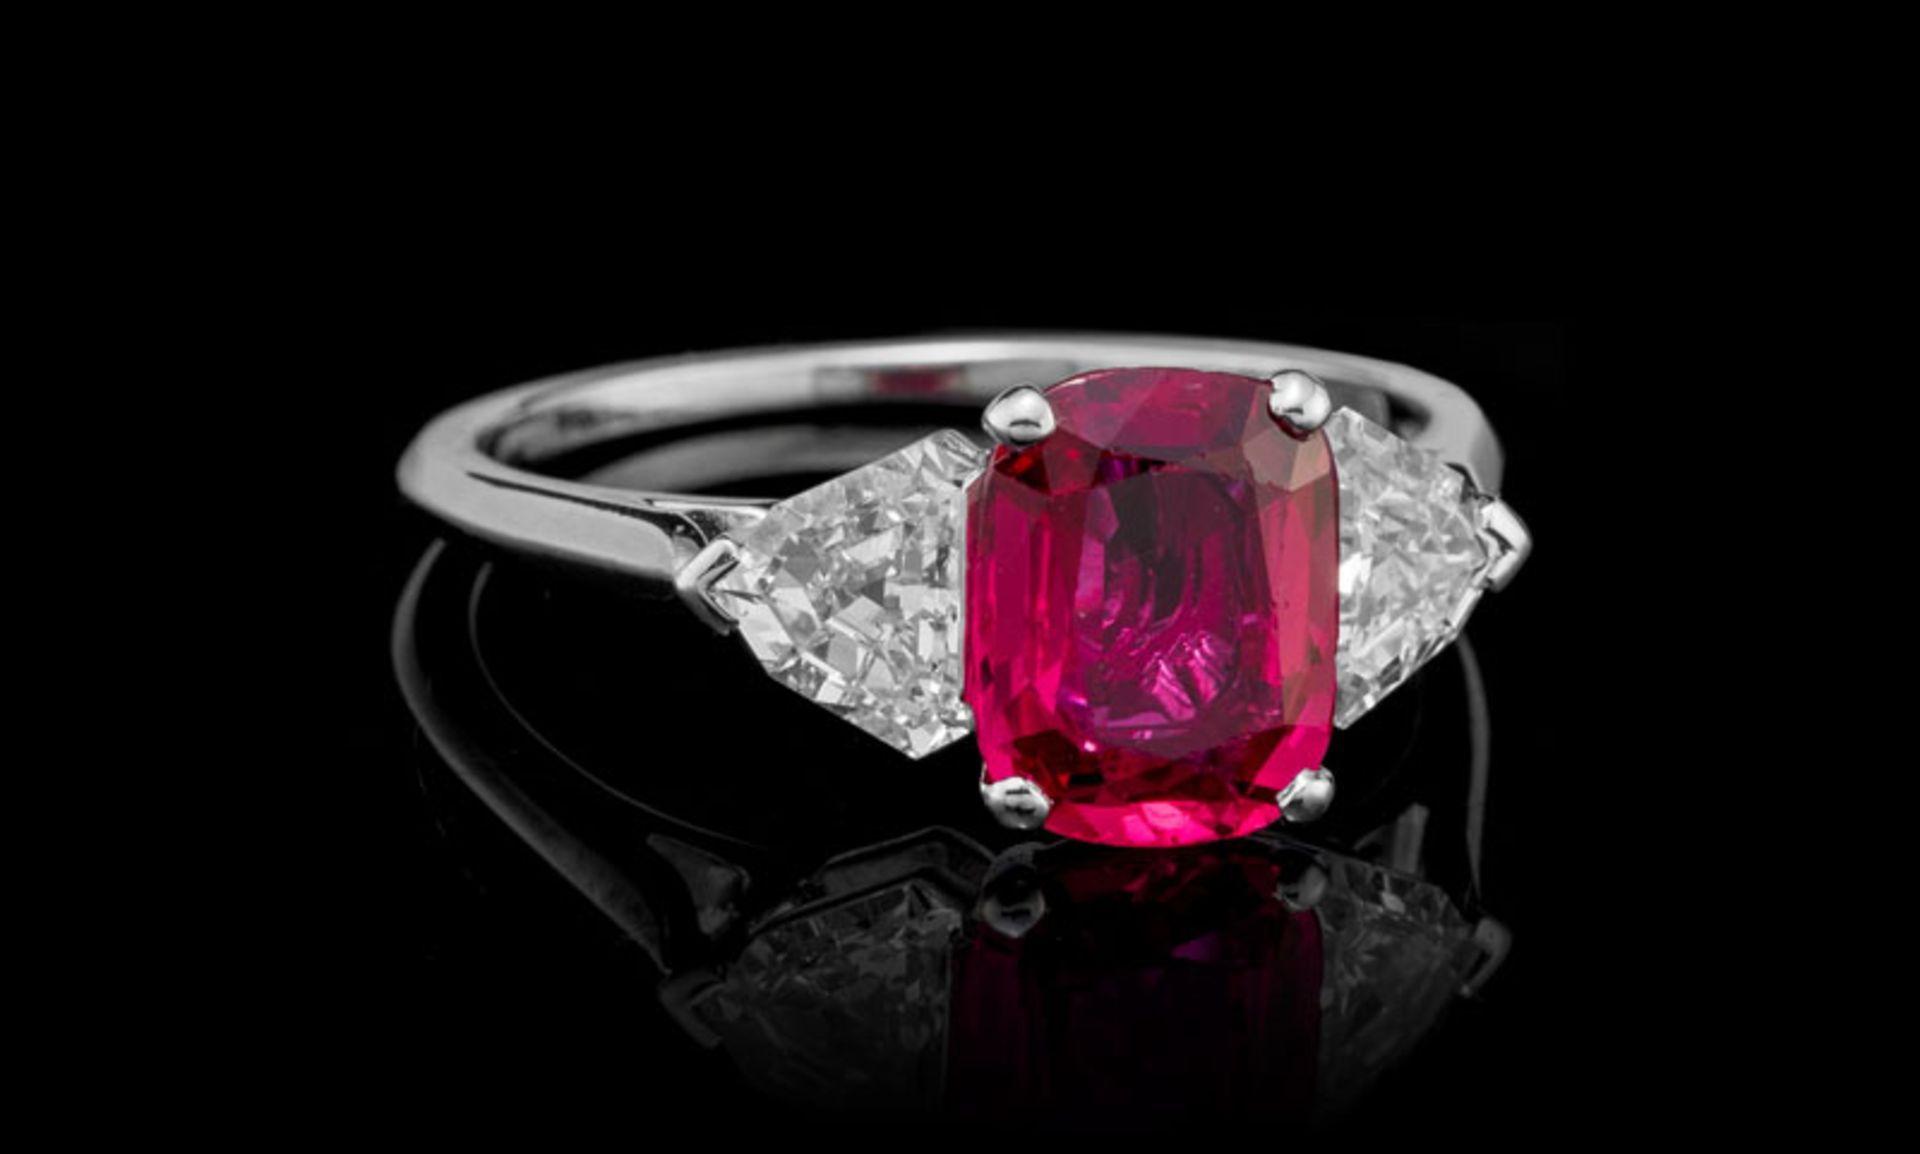 Cartier, bague platine sertie d'un rubis Birman non chauffé taille coussin de 2.065 carats épaulé de - Image 2 of 5